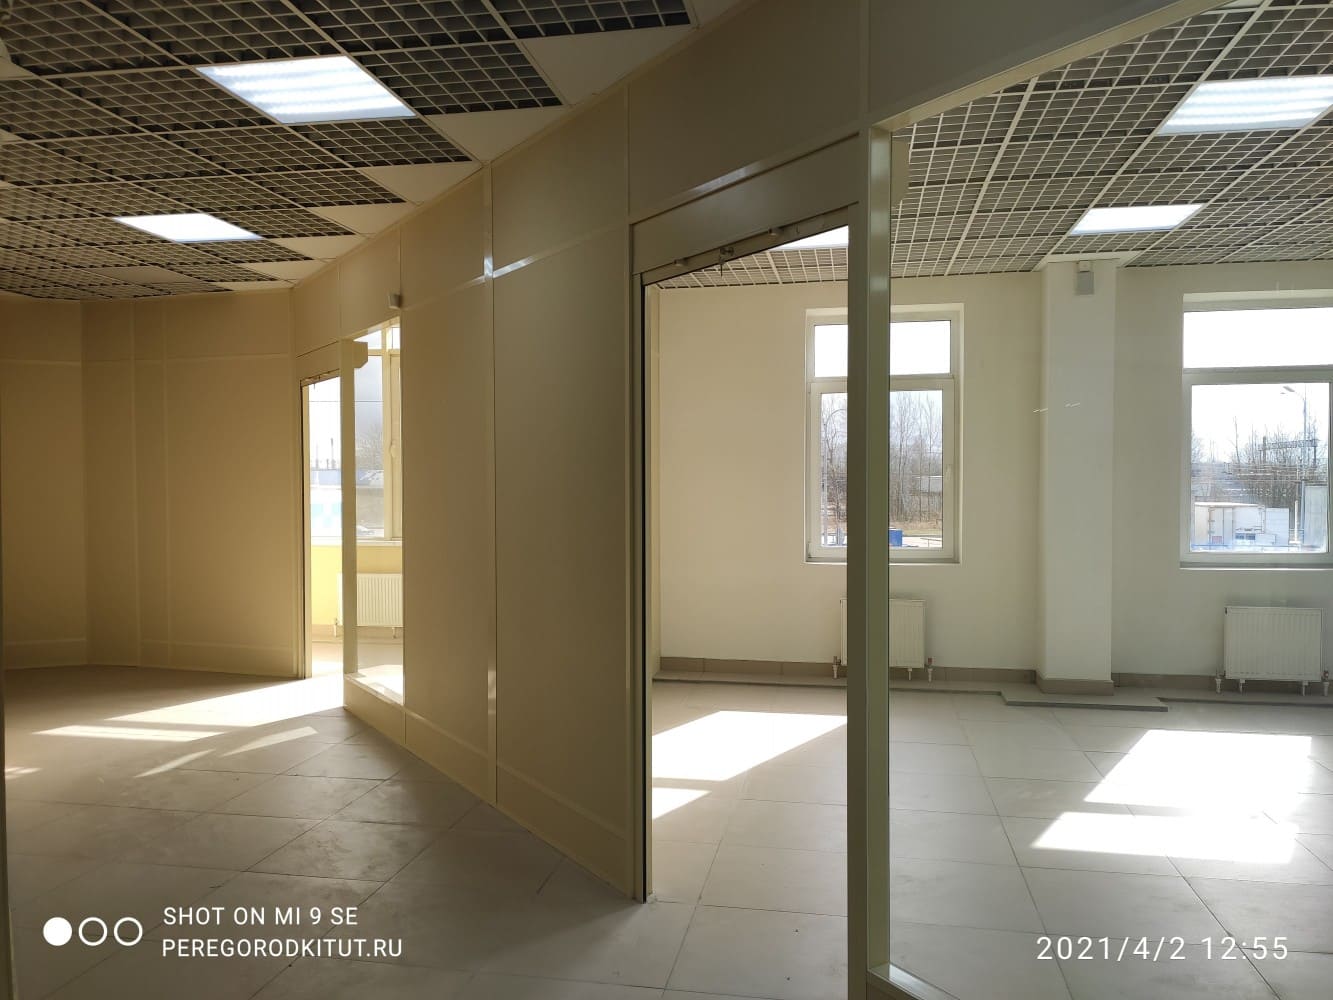 Объект № 3883 - Перегородки для разделения этажа на Загребском 45 - фото 3